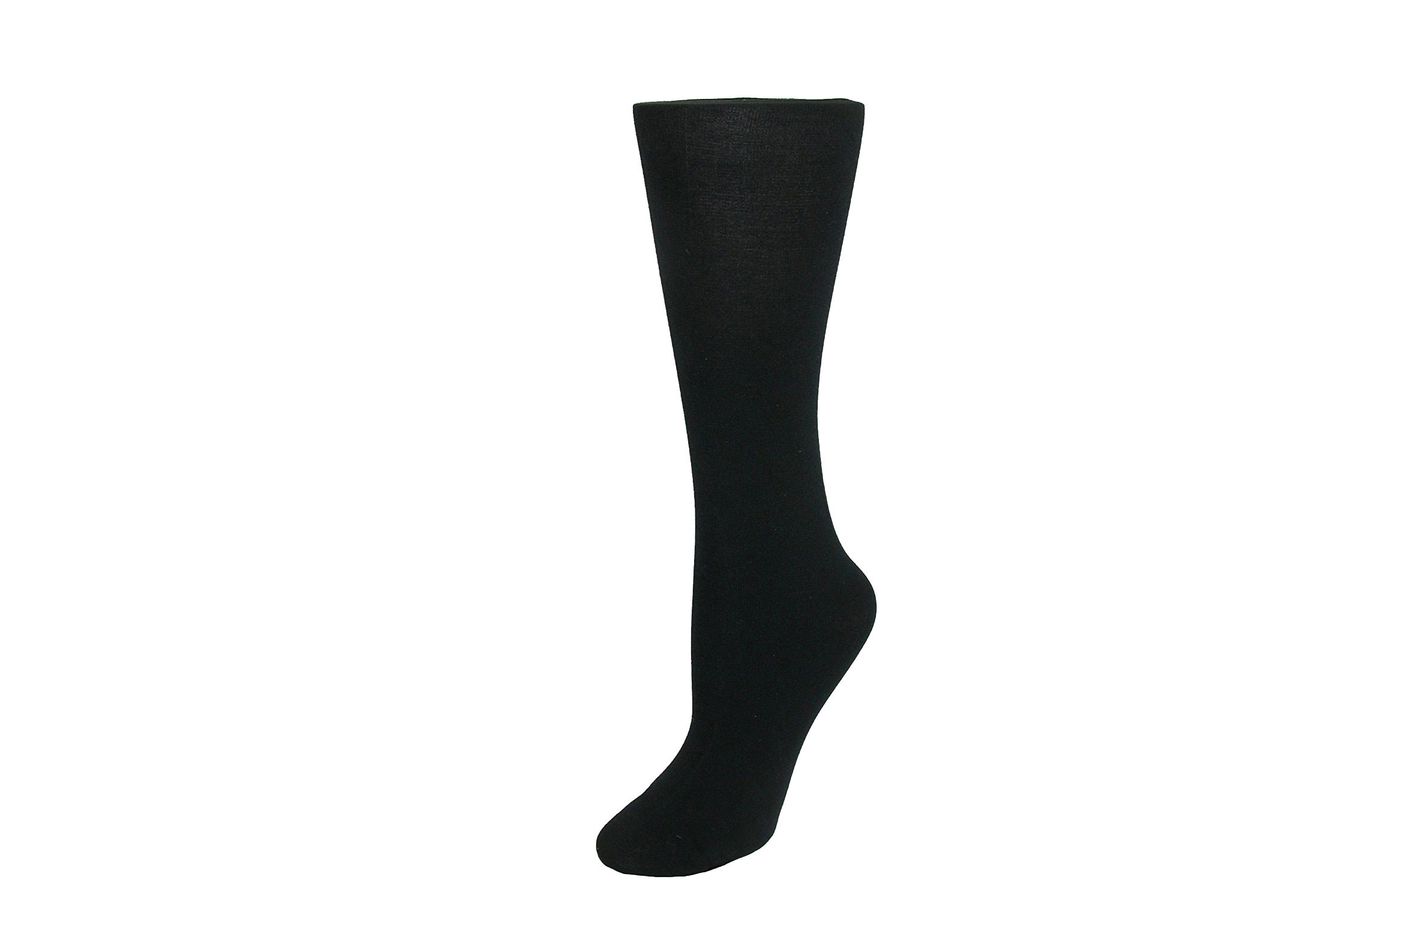 Best Dress Socks for Women — Black and Navy Dress Socks | The Strategist